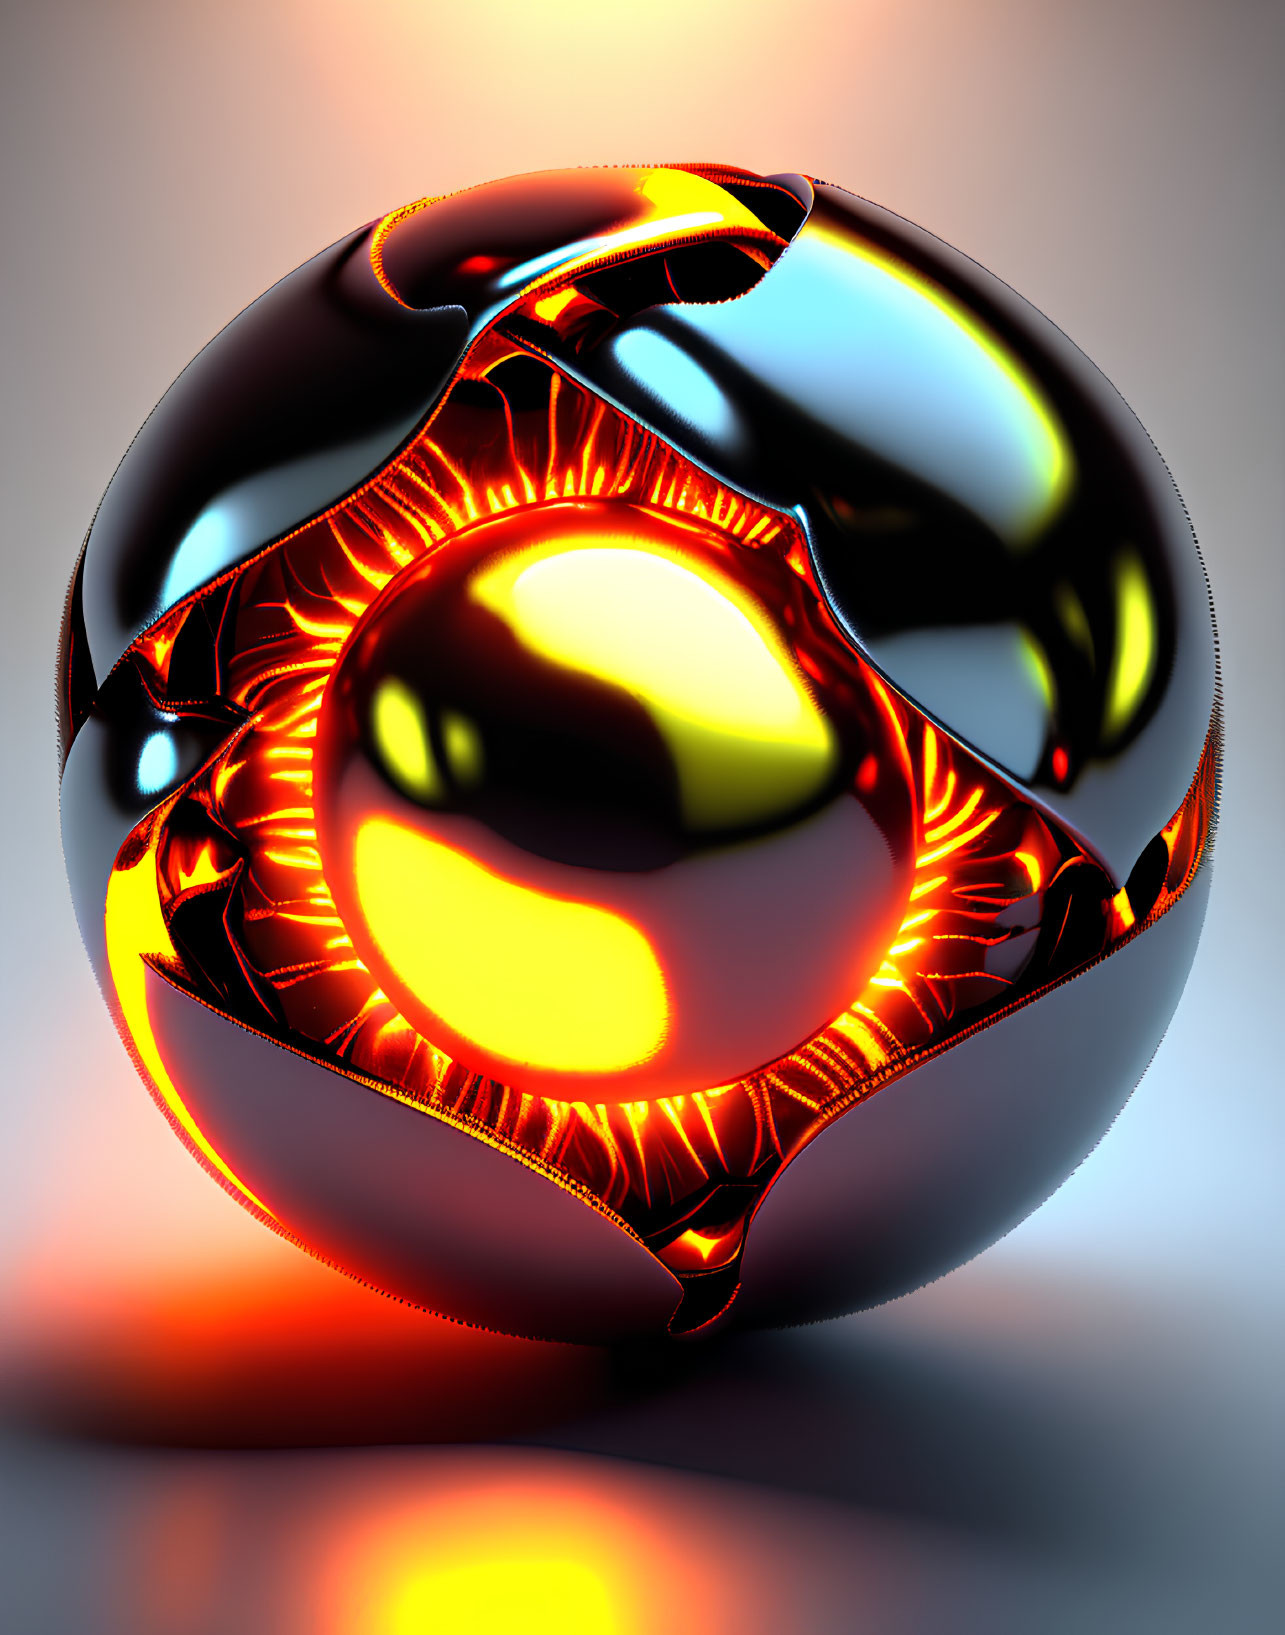 Shiny Black Sphere with Orange Luminous Cracks on Soft-lit Background